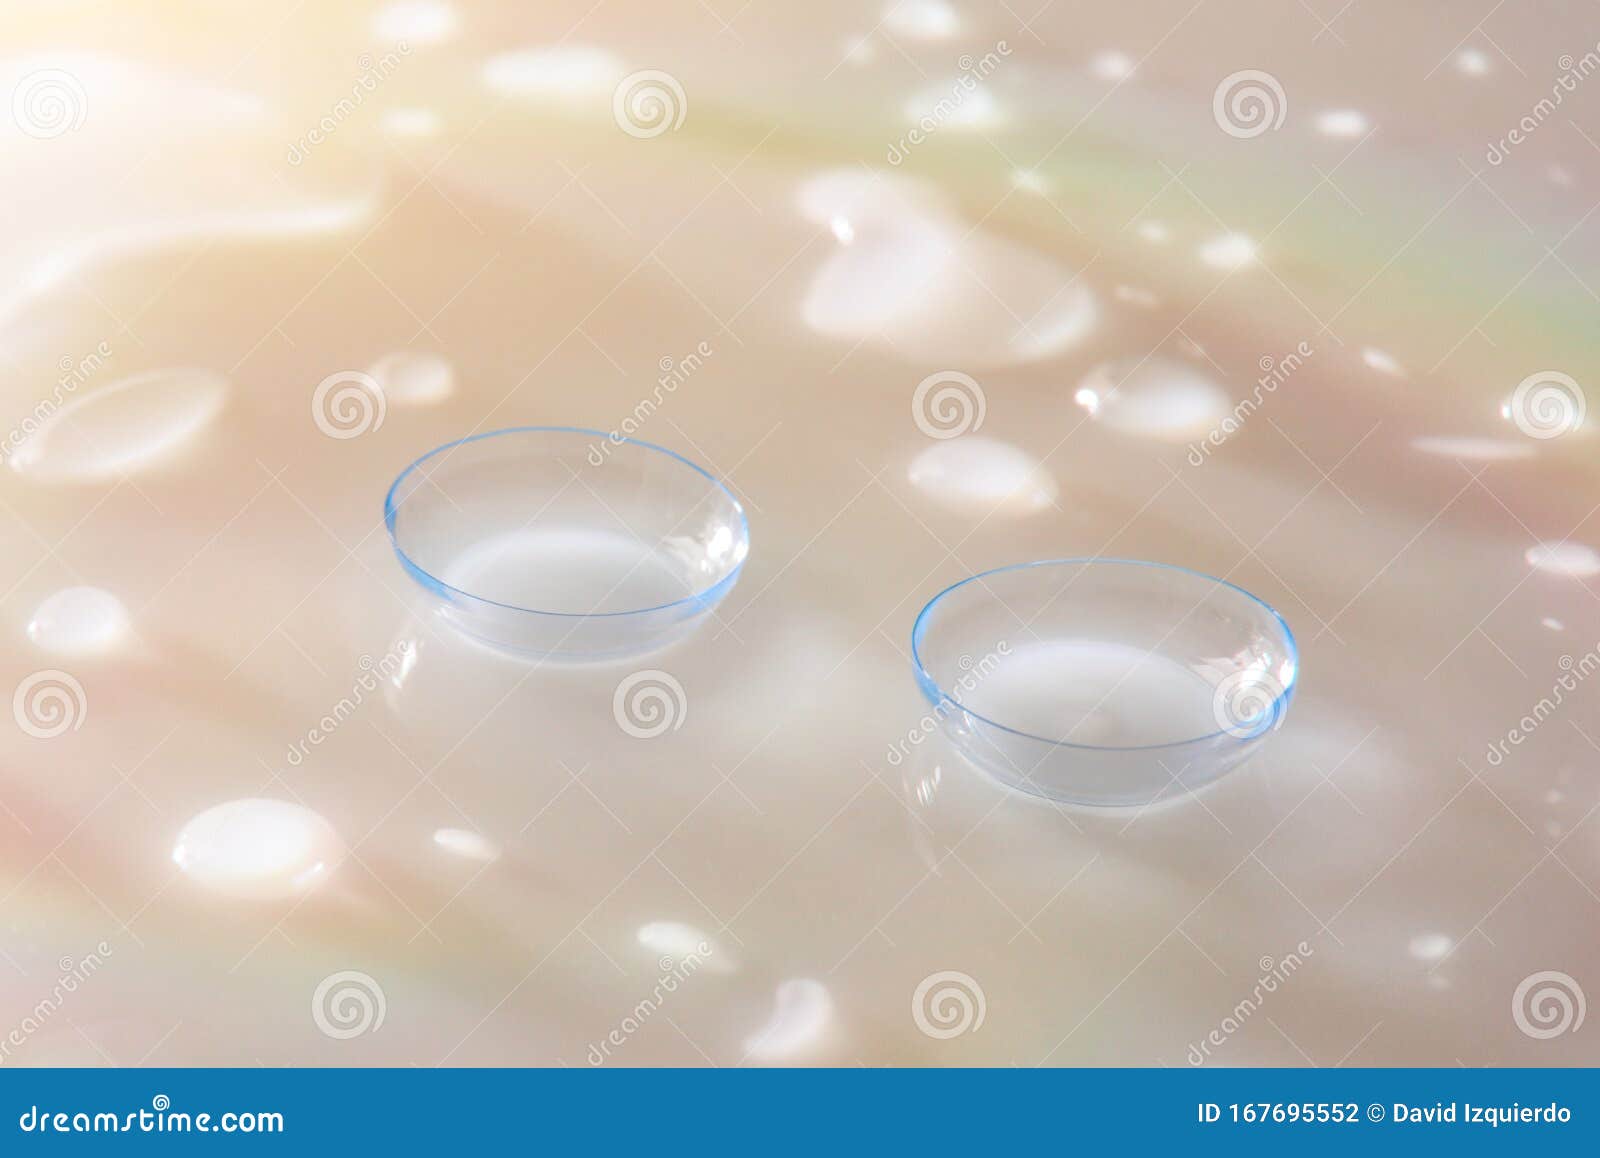 Macro De Lentes De Contacto En Una Mesa De Cristal Blanco Con Reflejos De  Color Foto de archivo - Imagen de detalle, lentes: 167695552